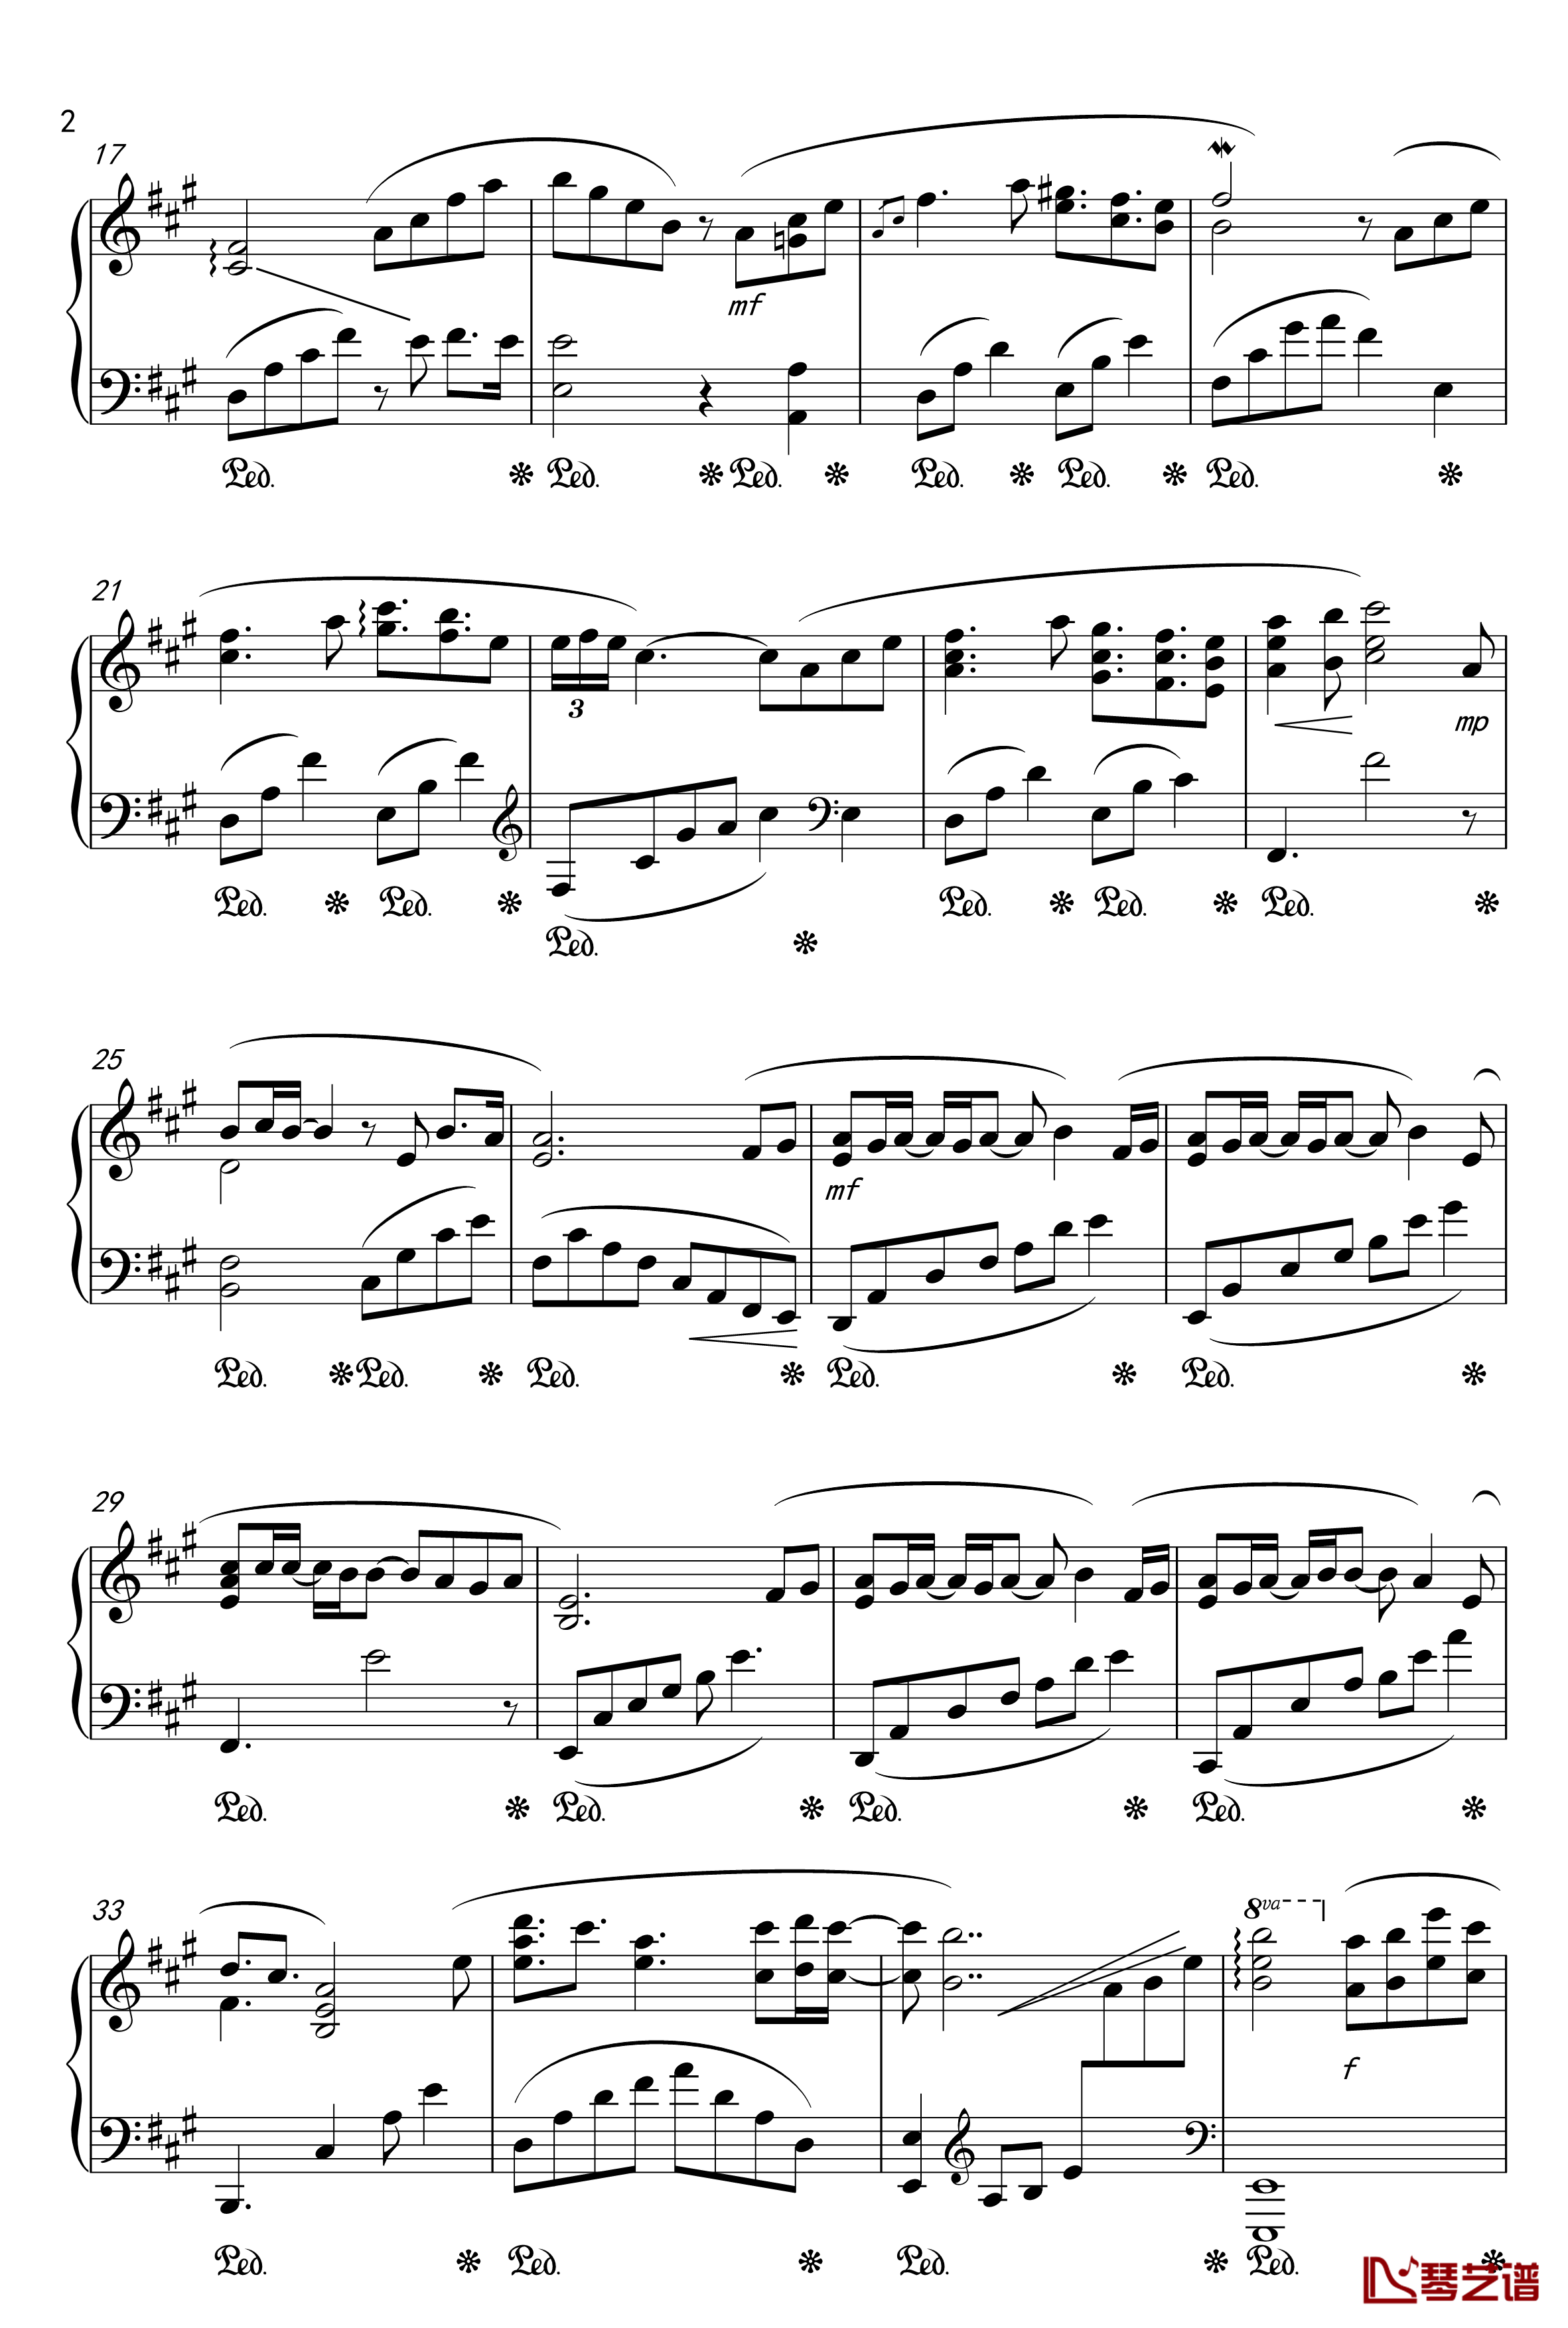 月夜に舞う恋の花-Piano Instrumental-钢琴谱-千の刃涛2